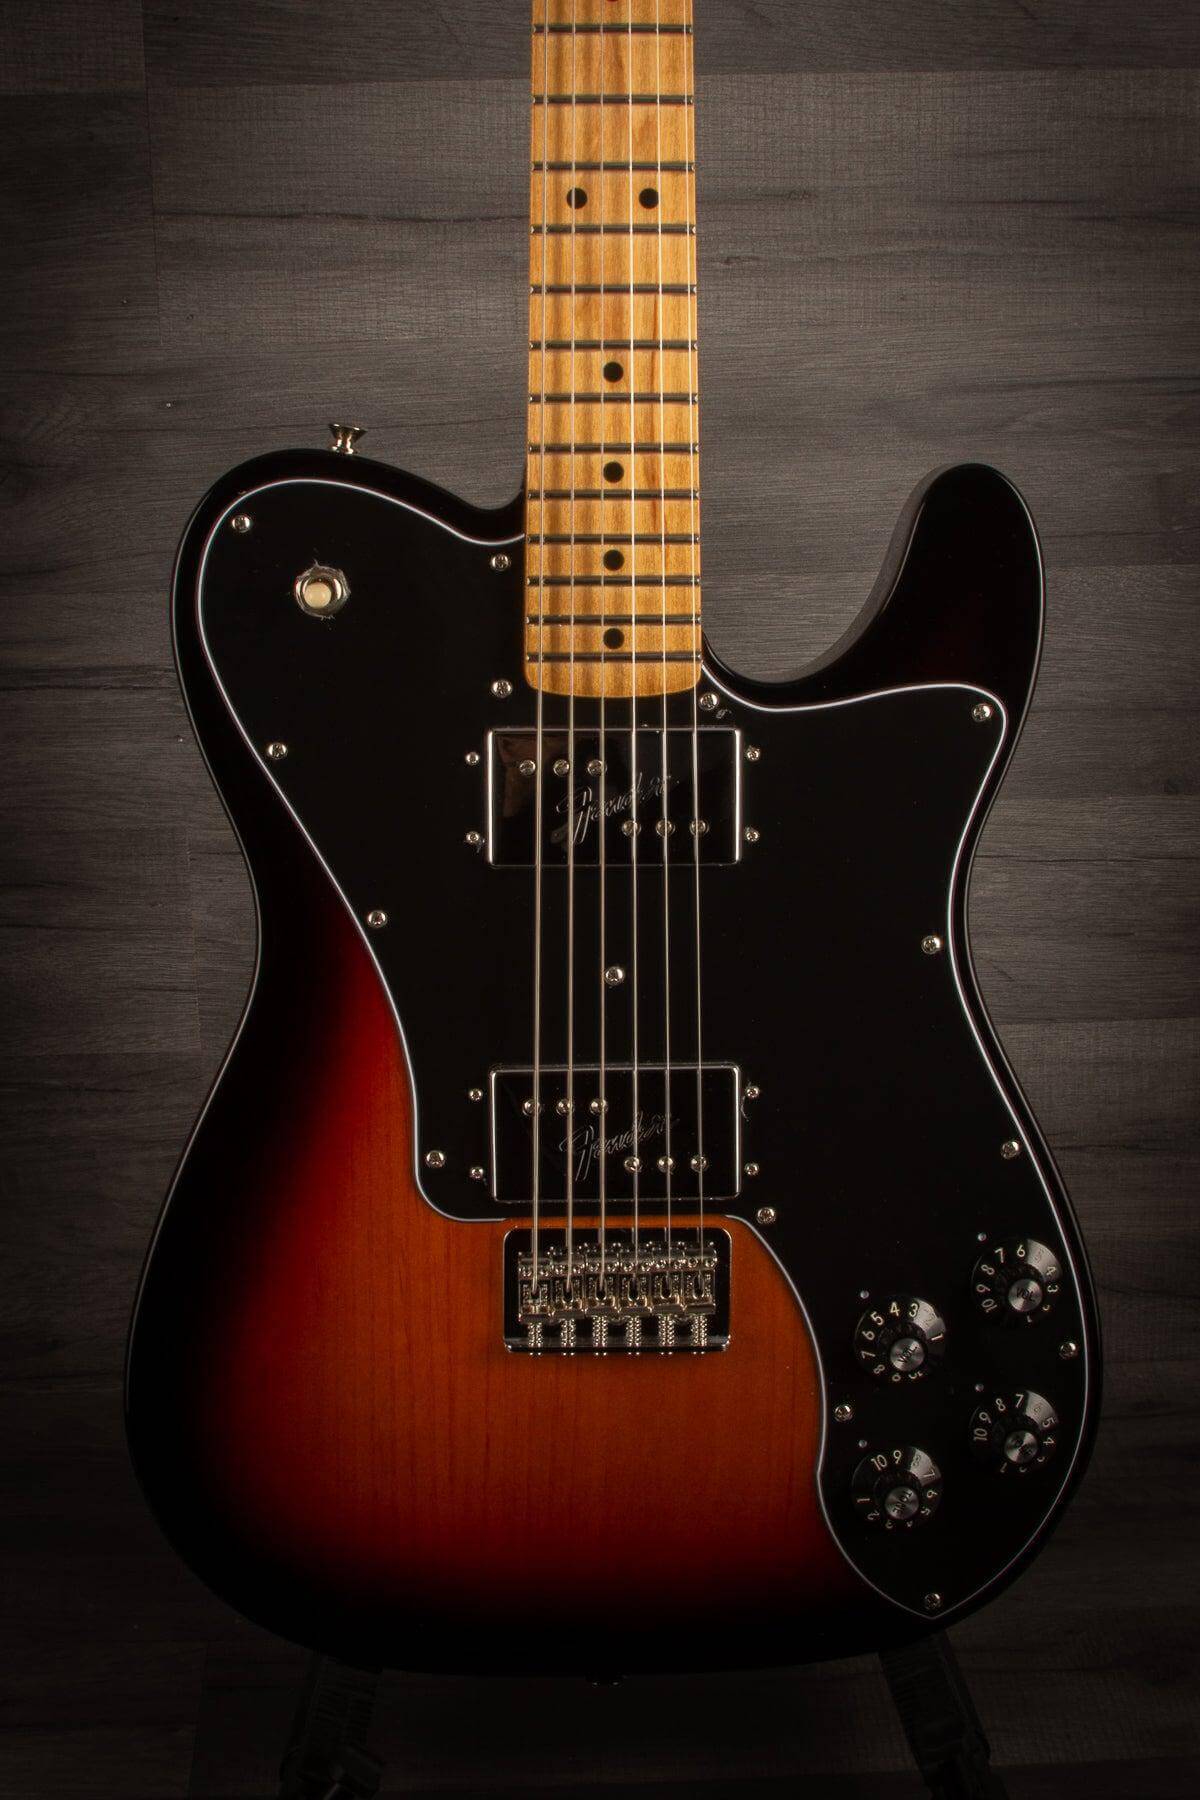 USED - Fender Vintera 70's Deluxe Tele Sunburst - MusicStreet